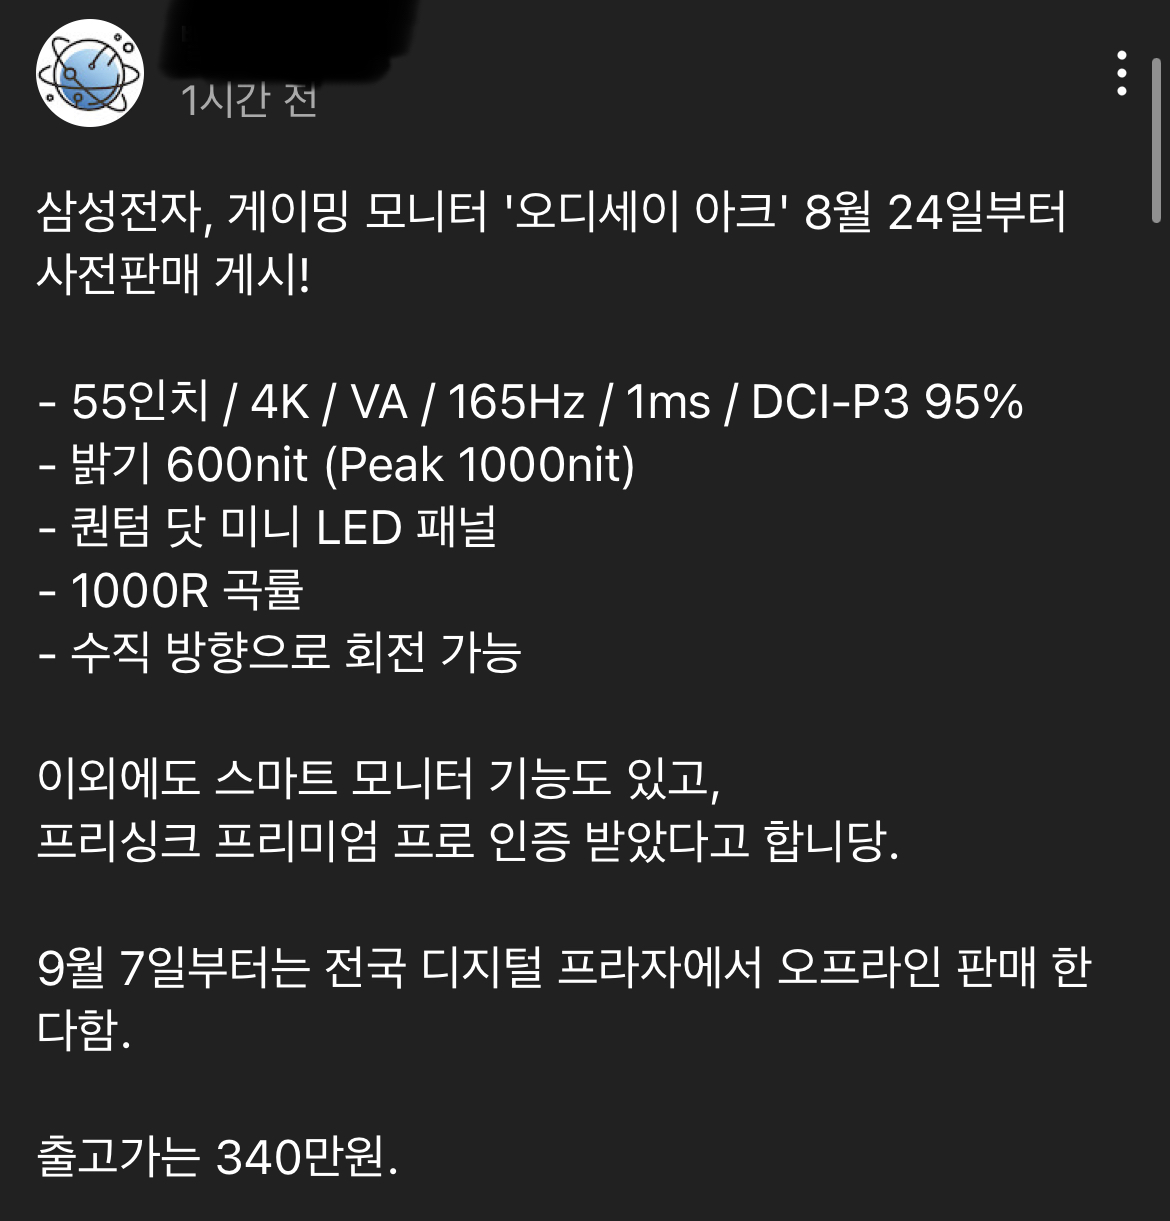 삼성에서 새로 공개한 모니터